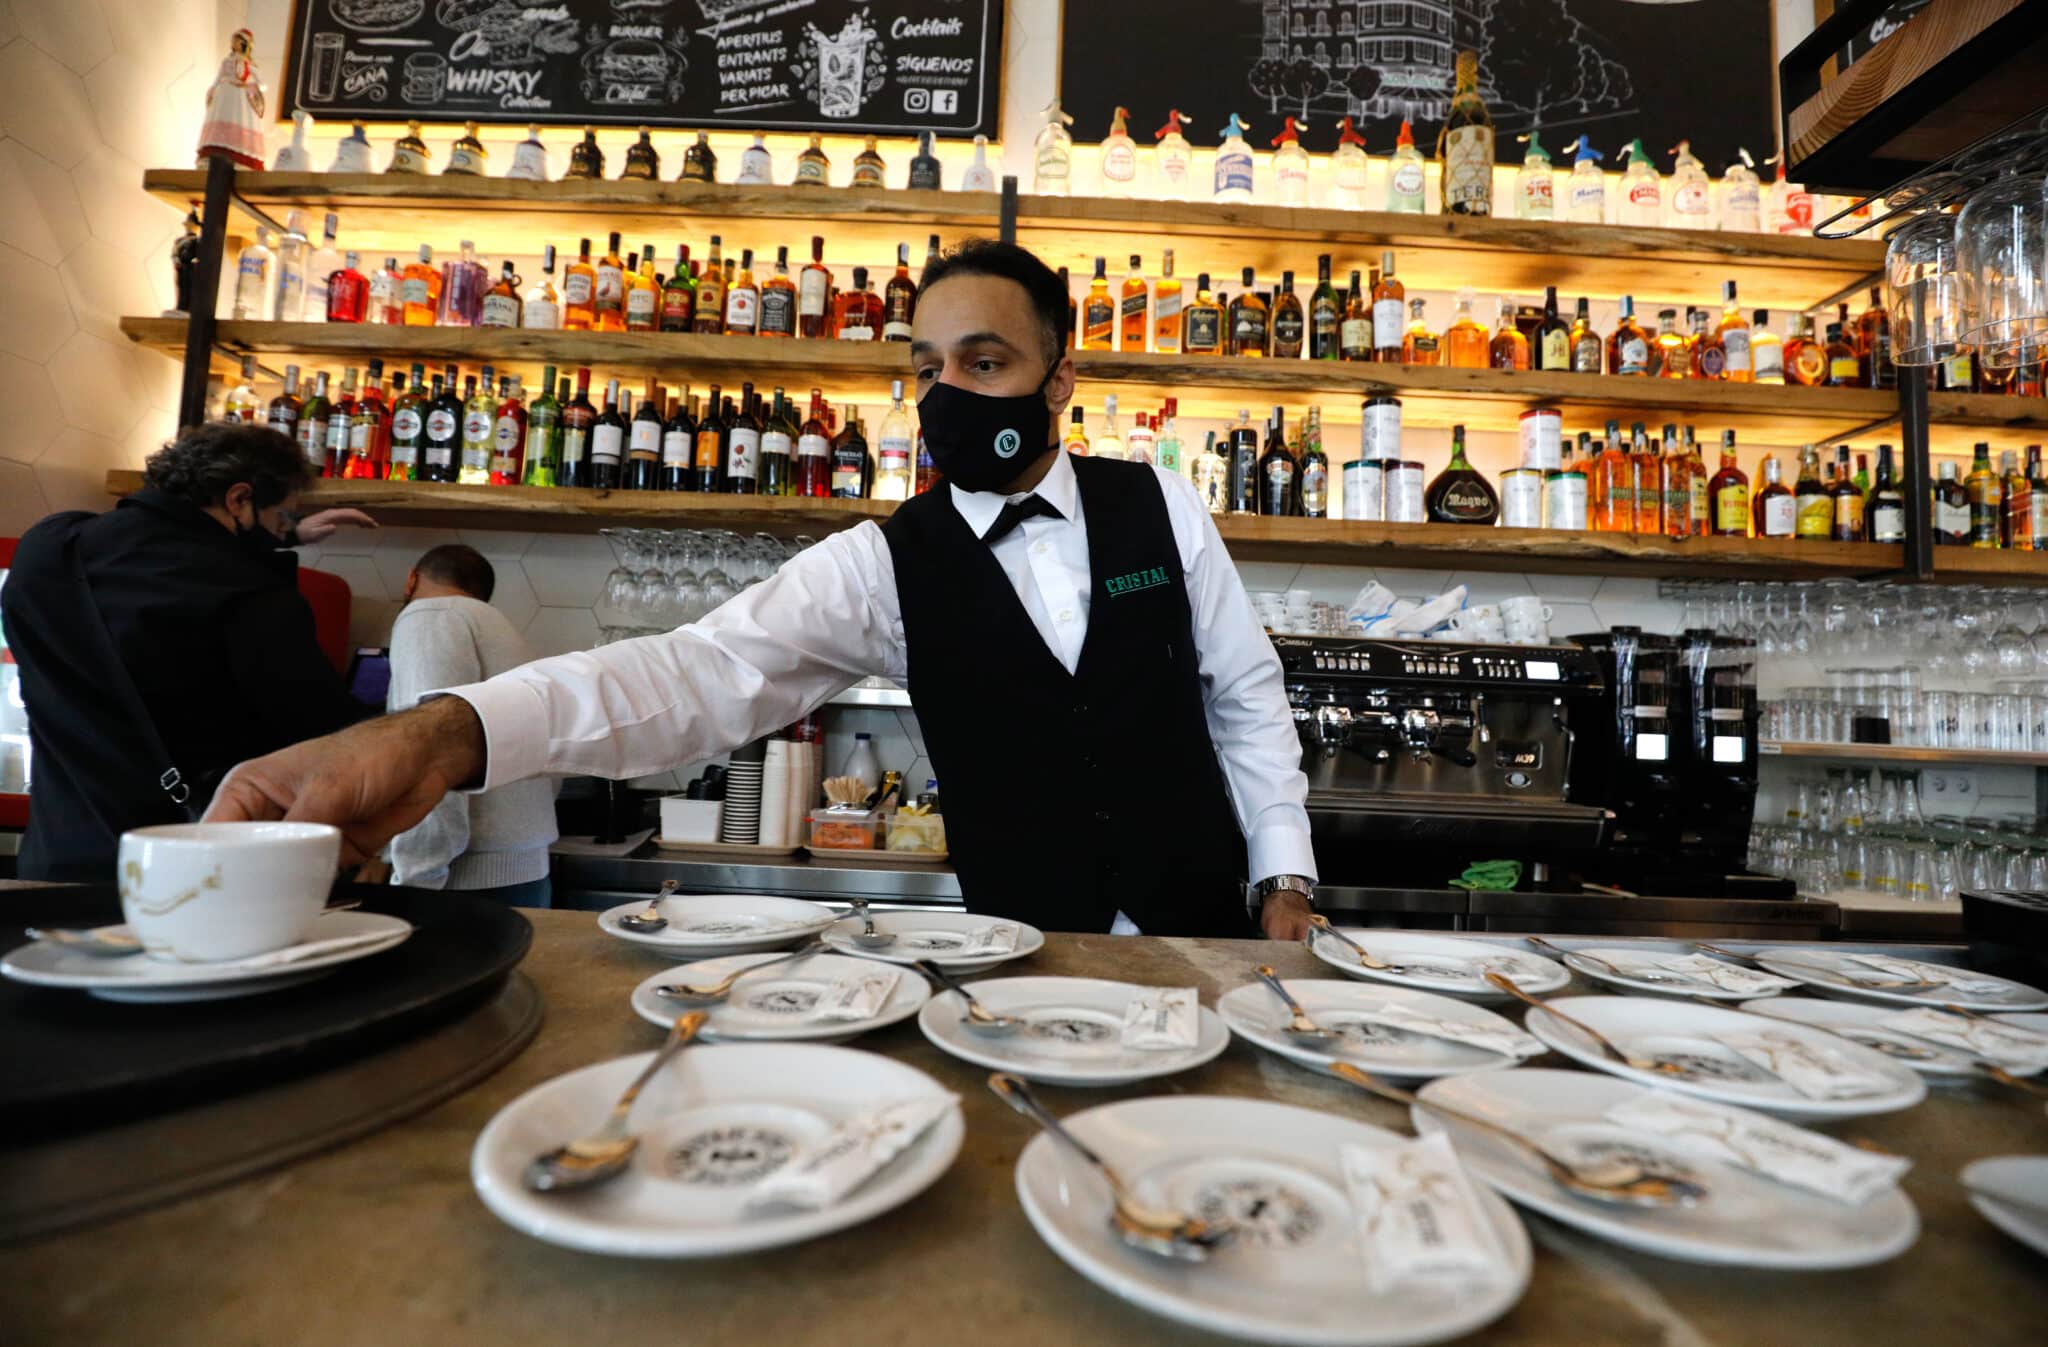 Imagen de un camarero en una cafetería.